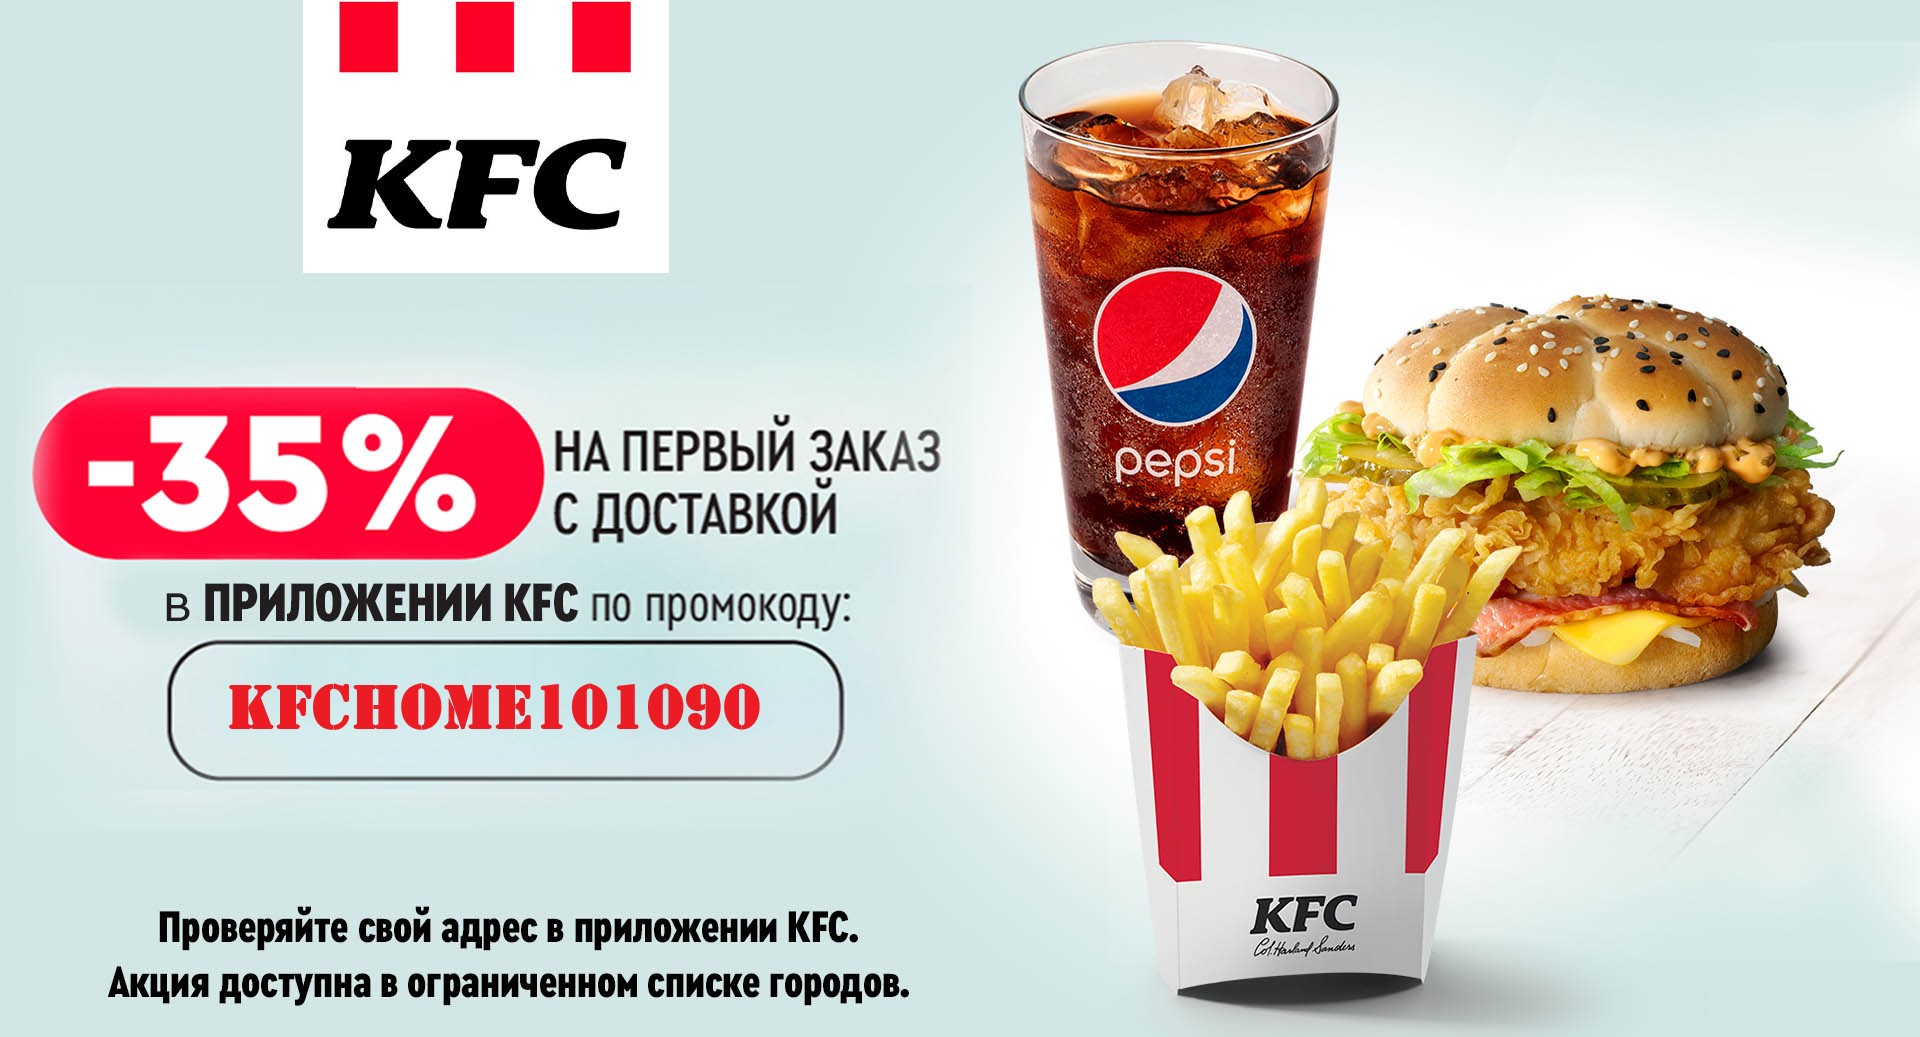 Промокод kfc на первый заказ в приложении. KFC скидка.